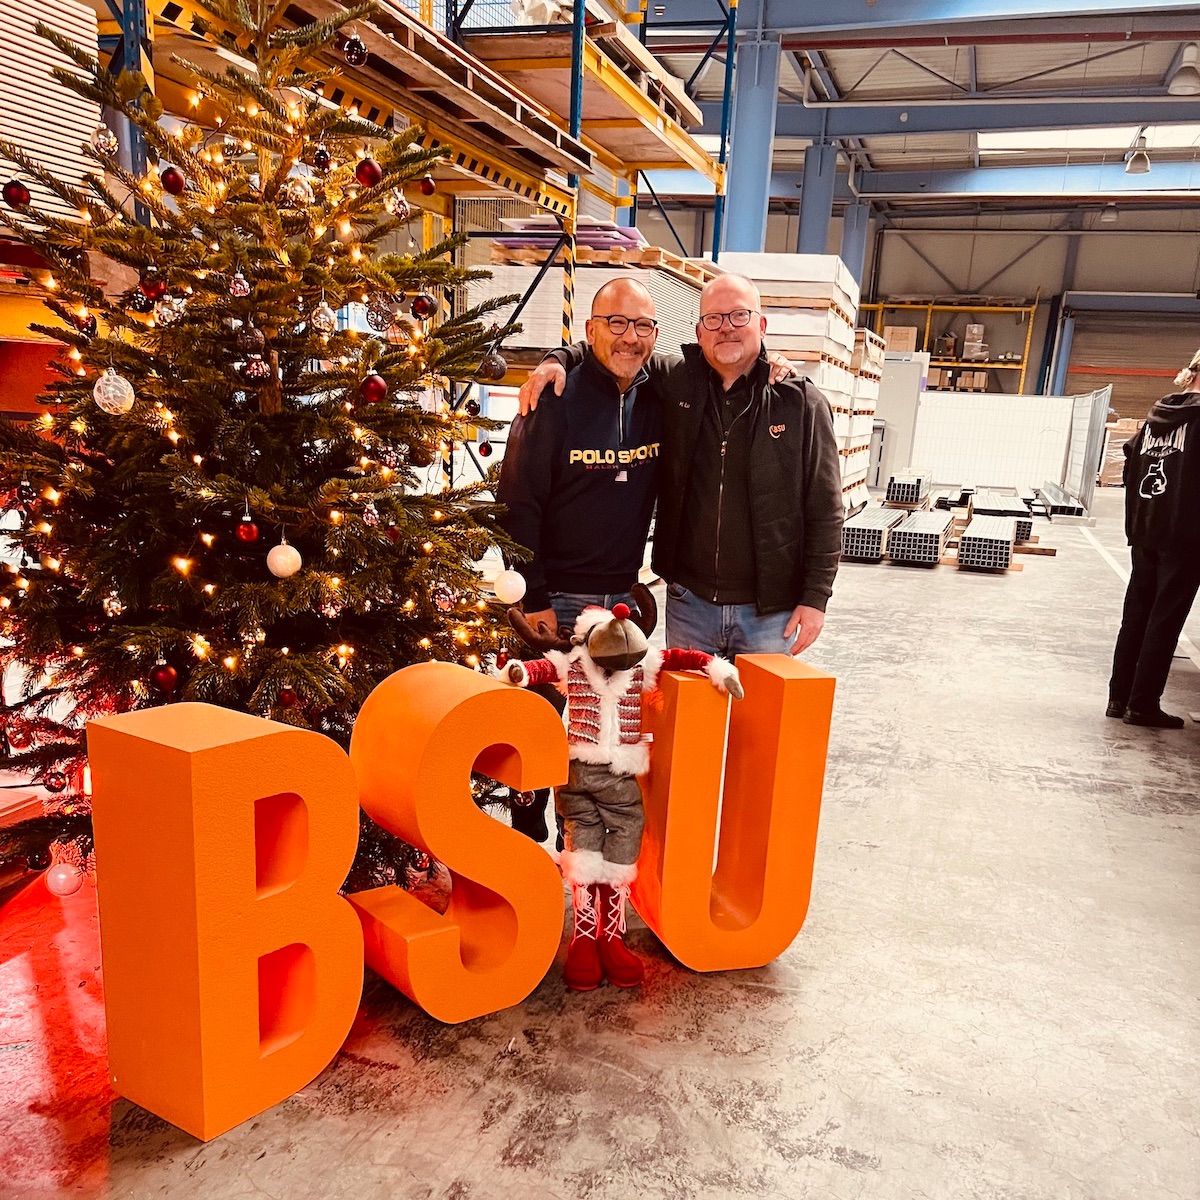 Wir sagen DANKE an das gesamte BSU Team und wünschen fröhliche Weihnachten!